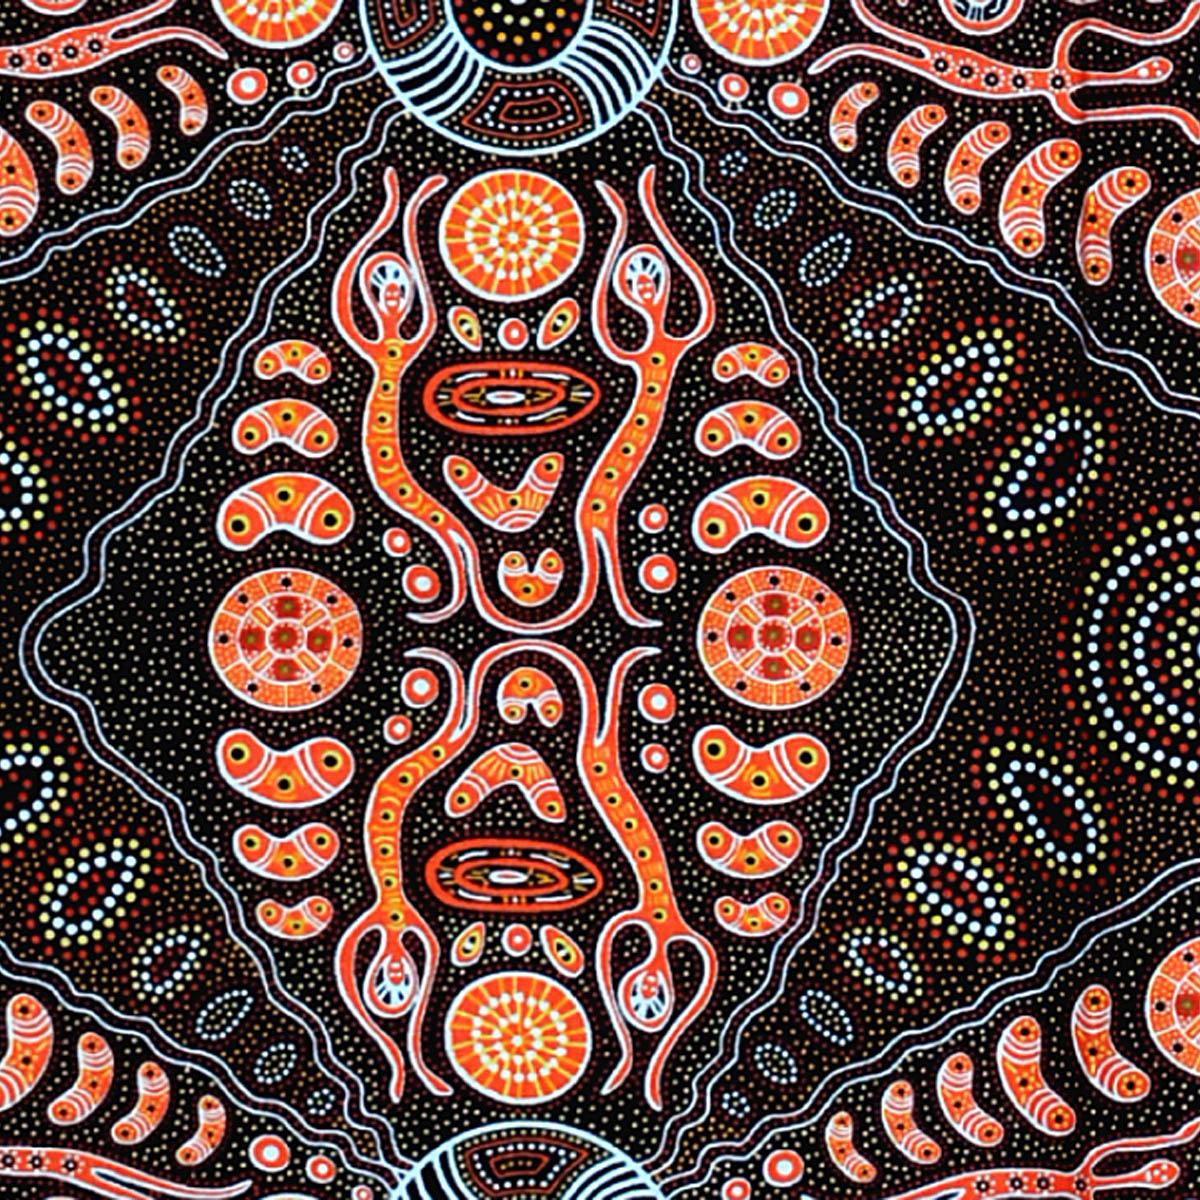 SPIRIT PEOPLE 2 BROWN by Aboriginal Artist Denise Doolan